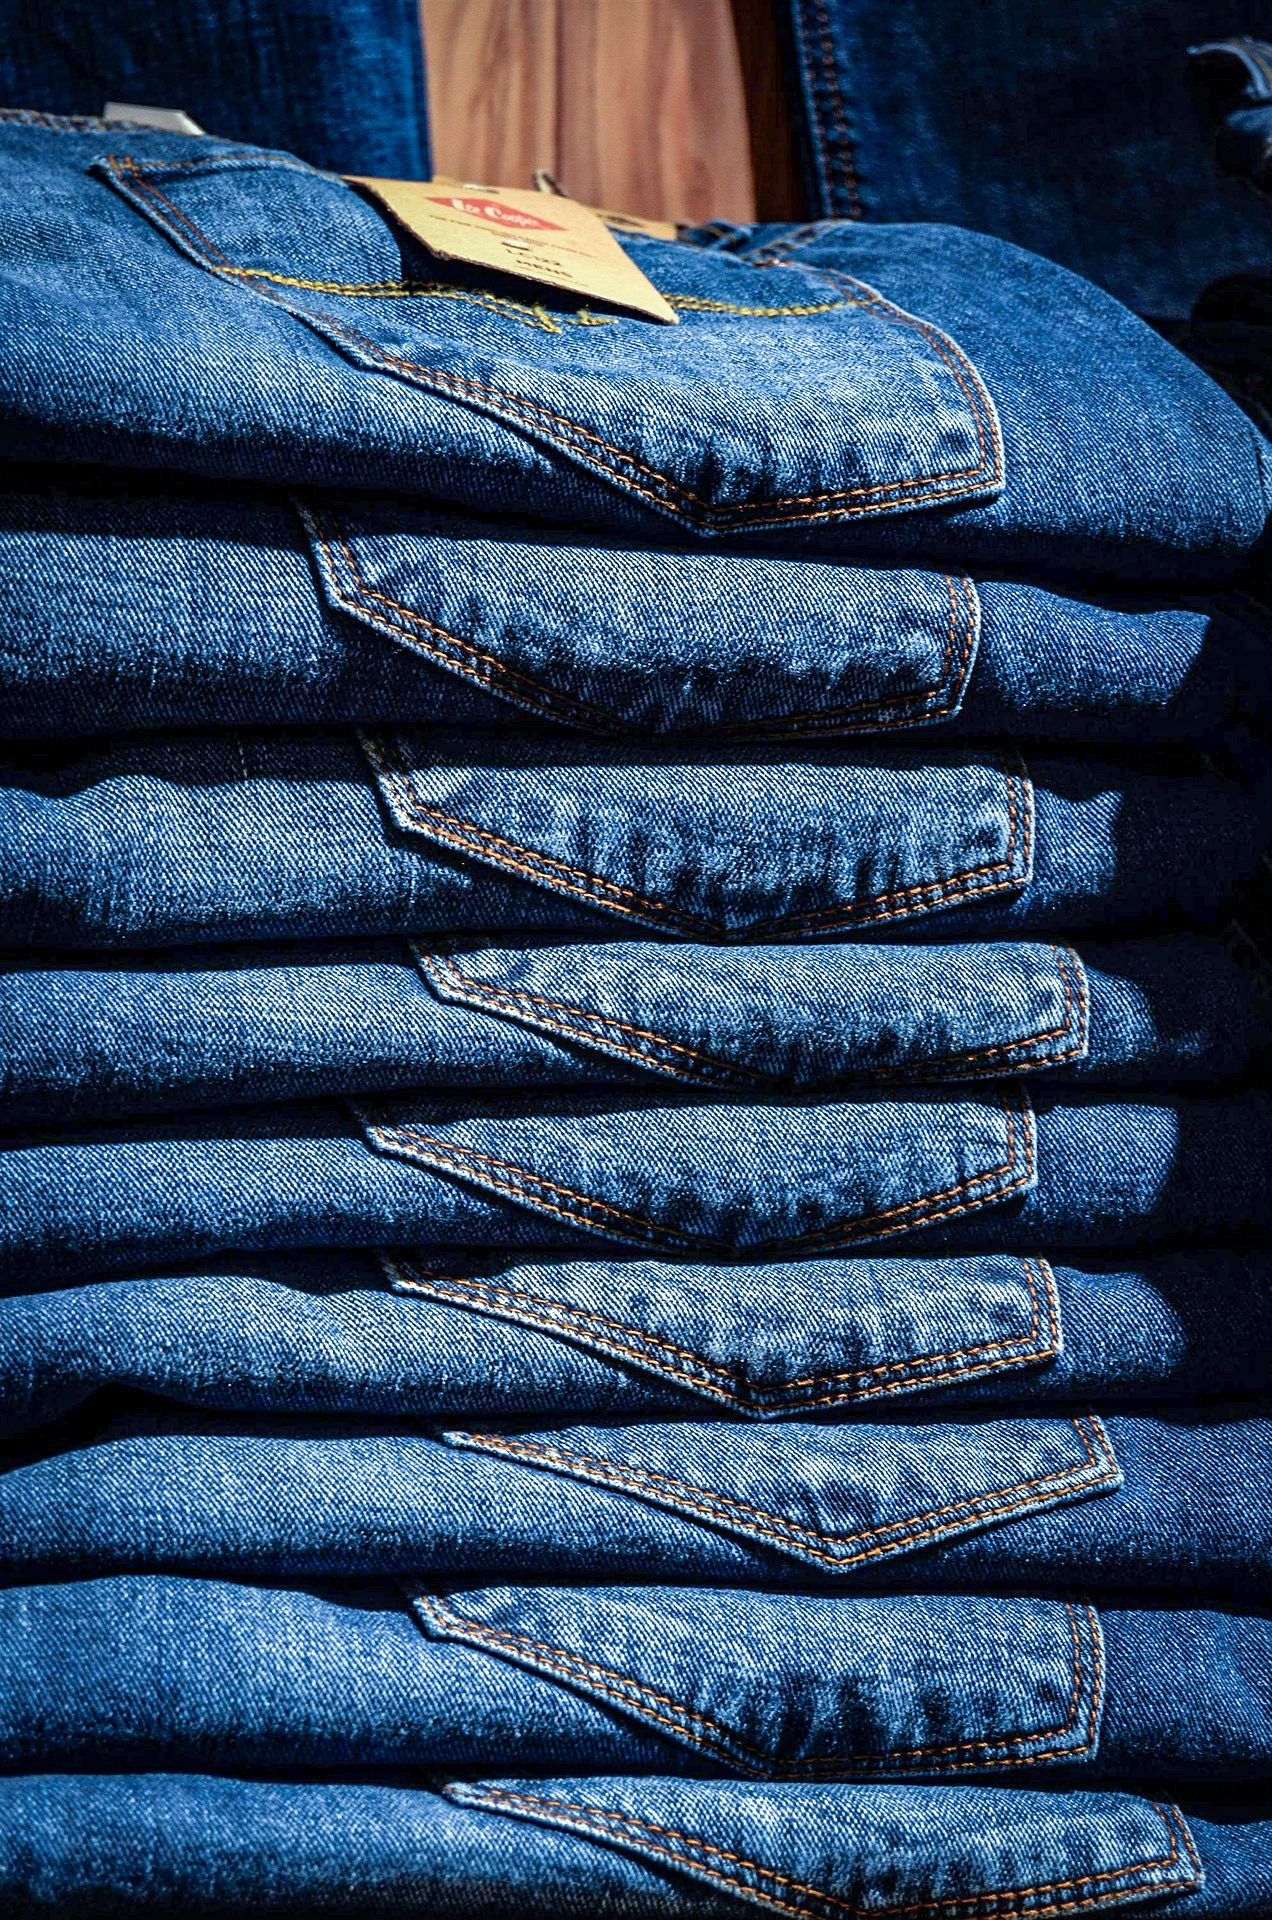 Best way to buy jeans online